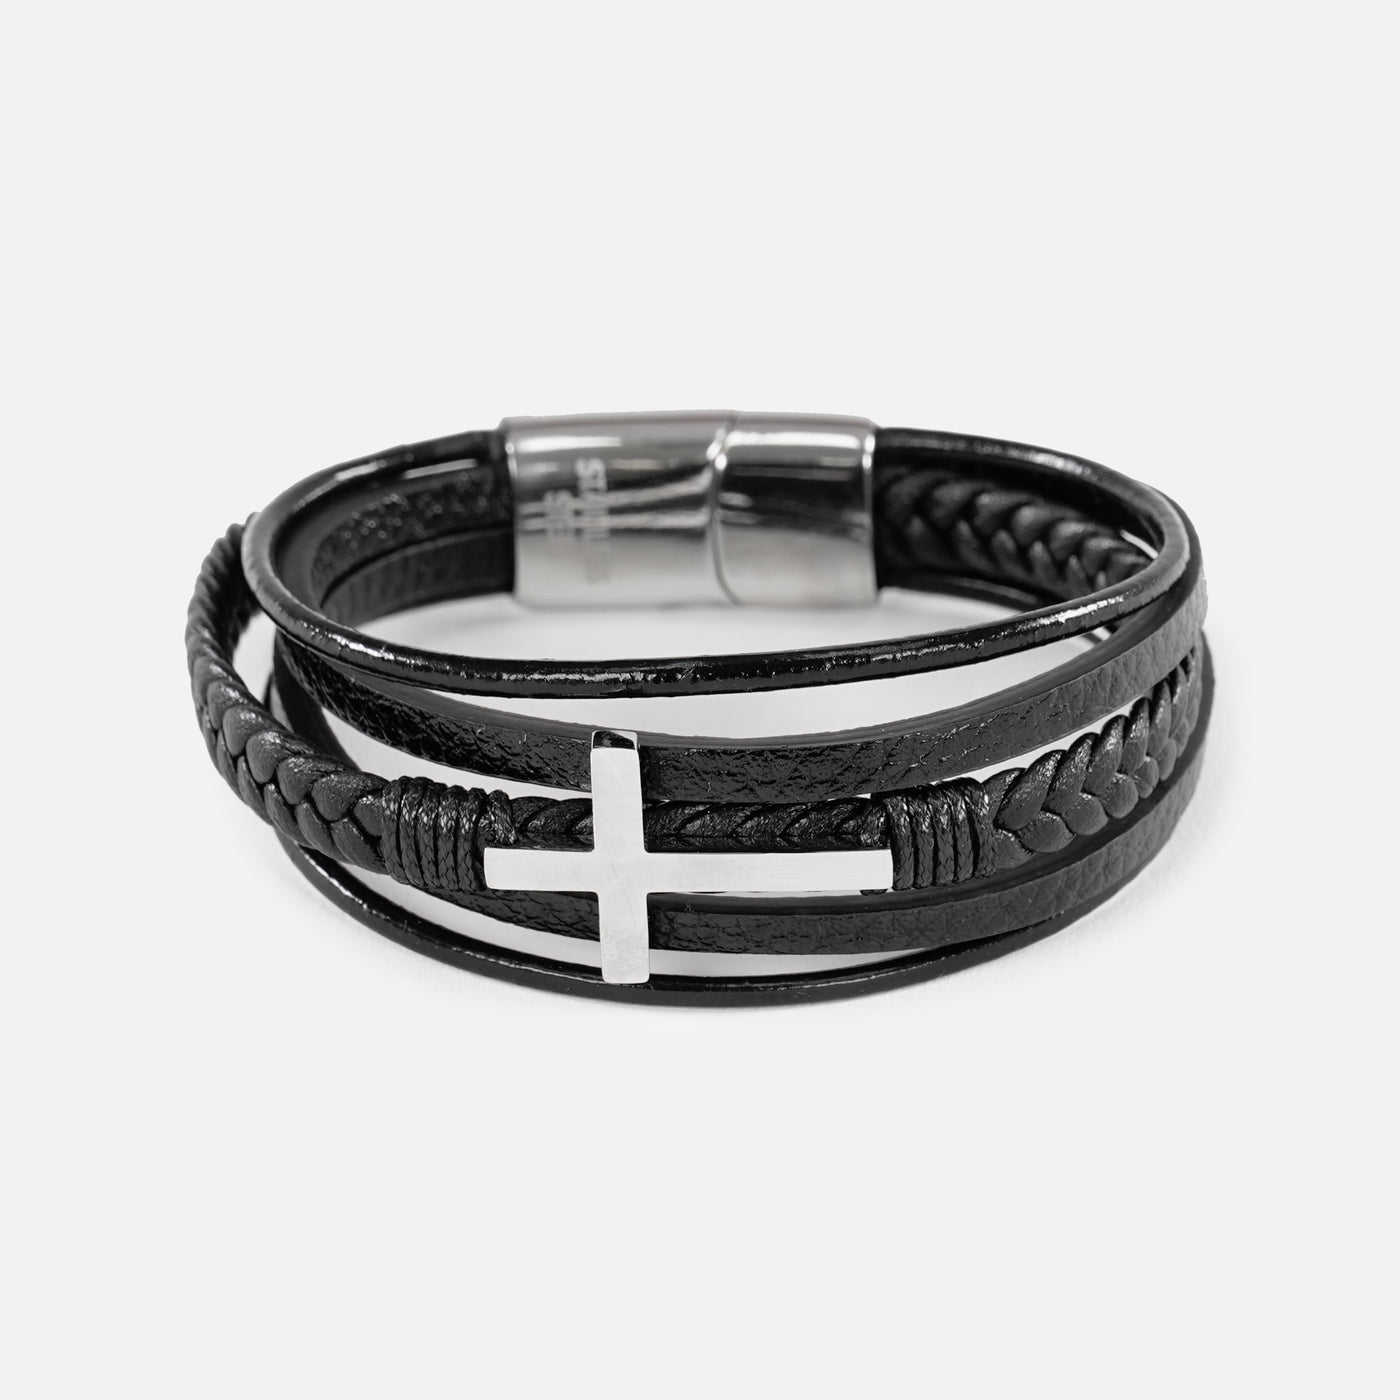 3 in 1 Steel Cross Leather Bracelet